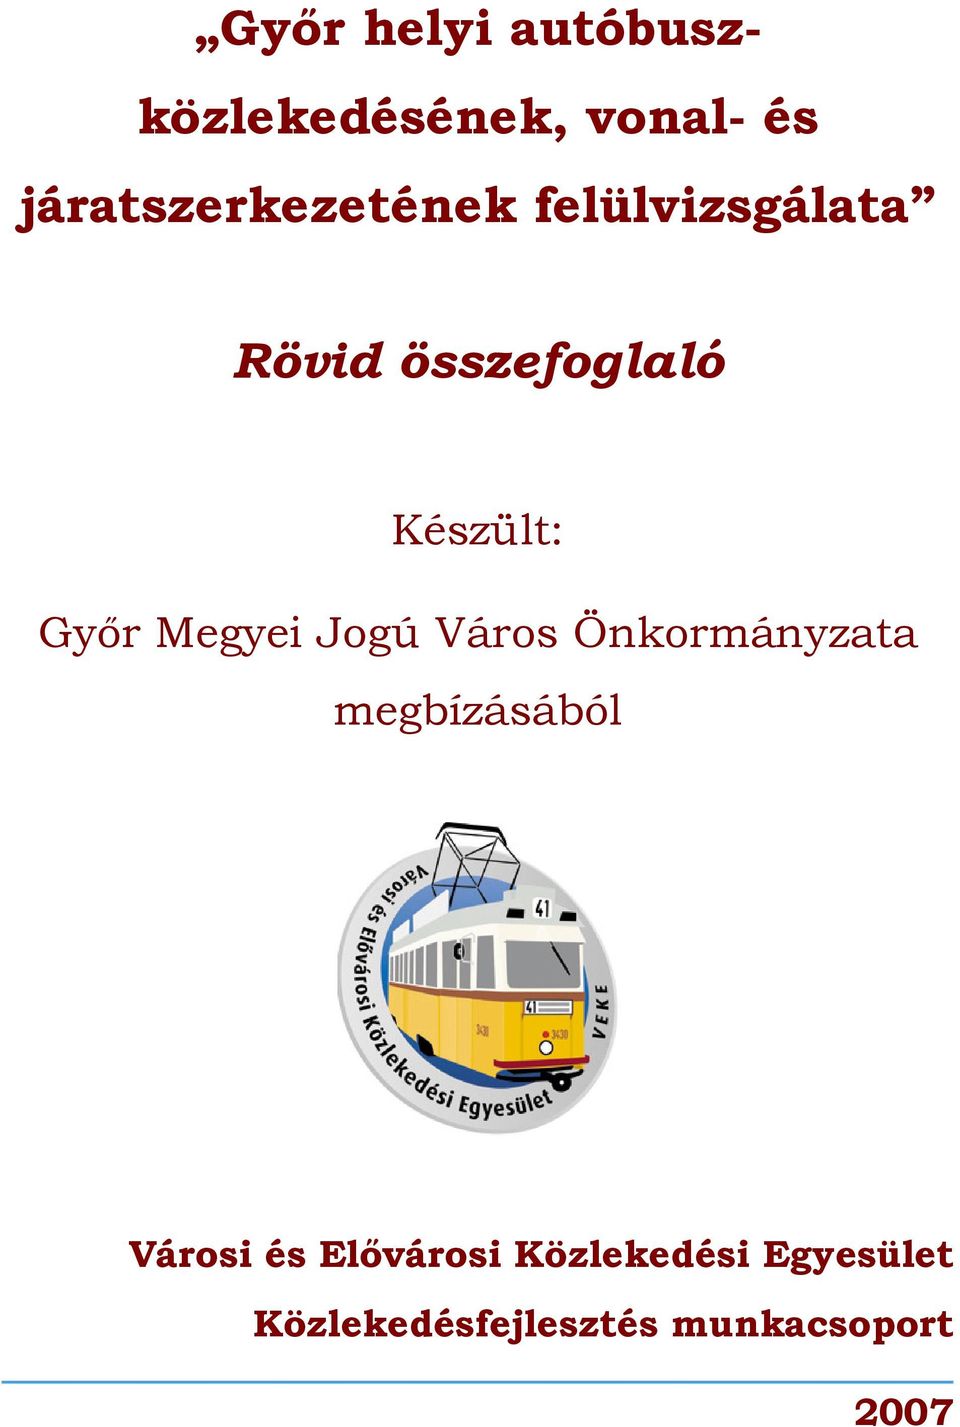 Készült: Győr Megyei Jogú Város Önkormányzata megbízásából